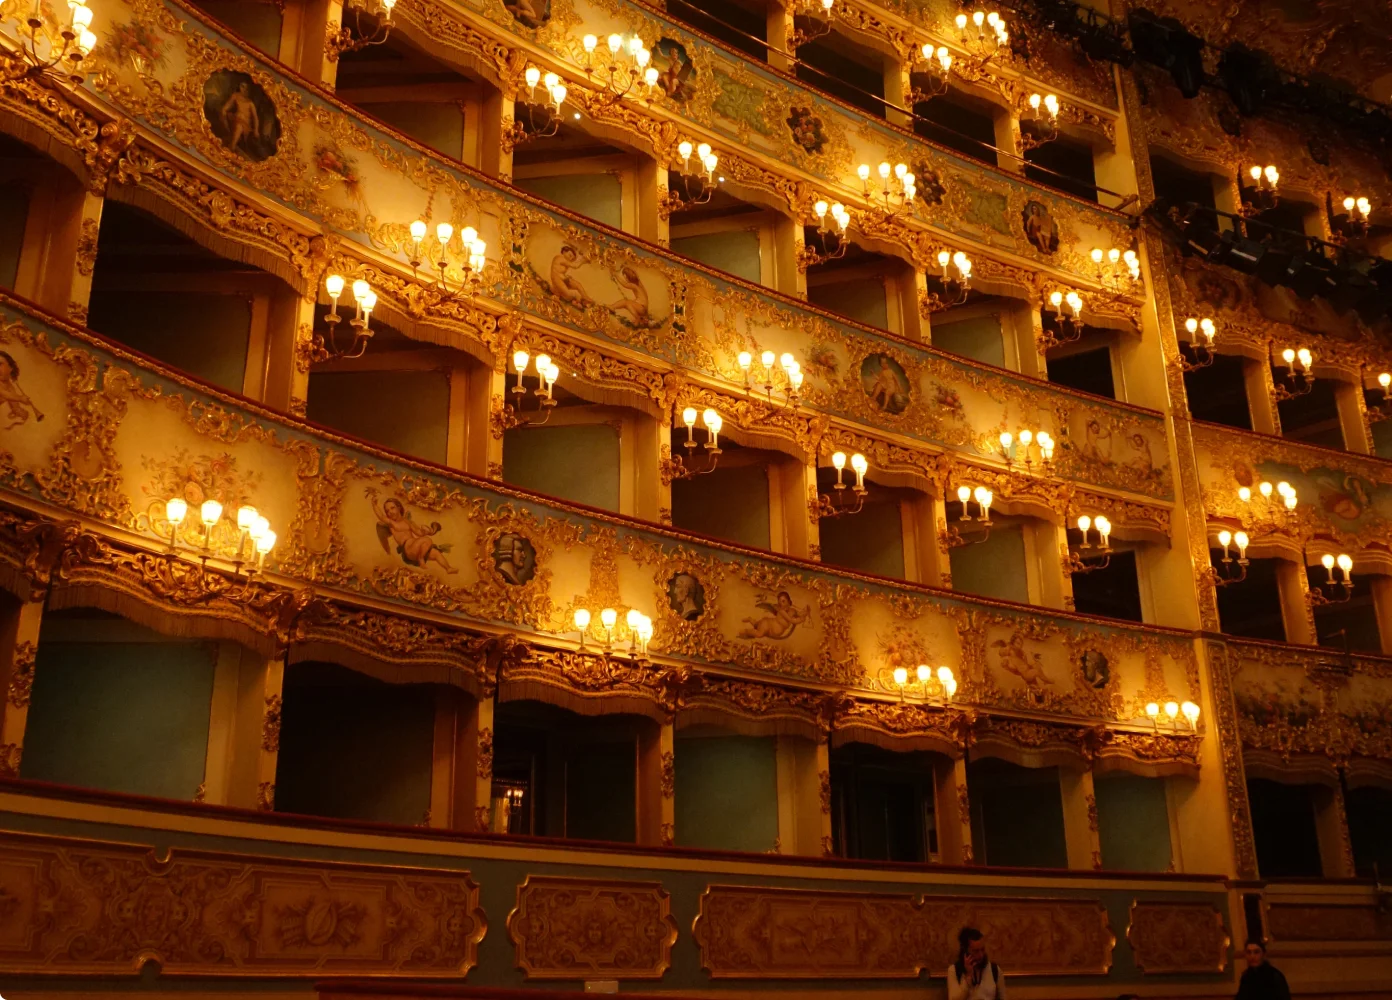 Das Innere eines Opernhauses.